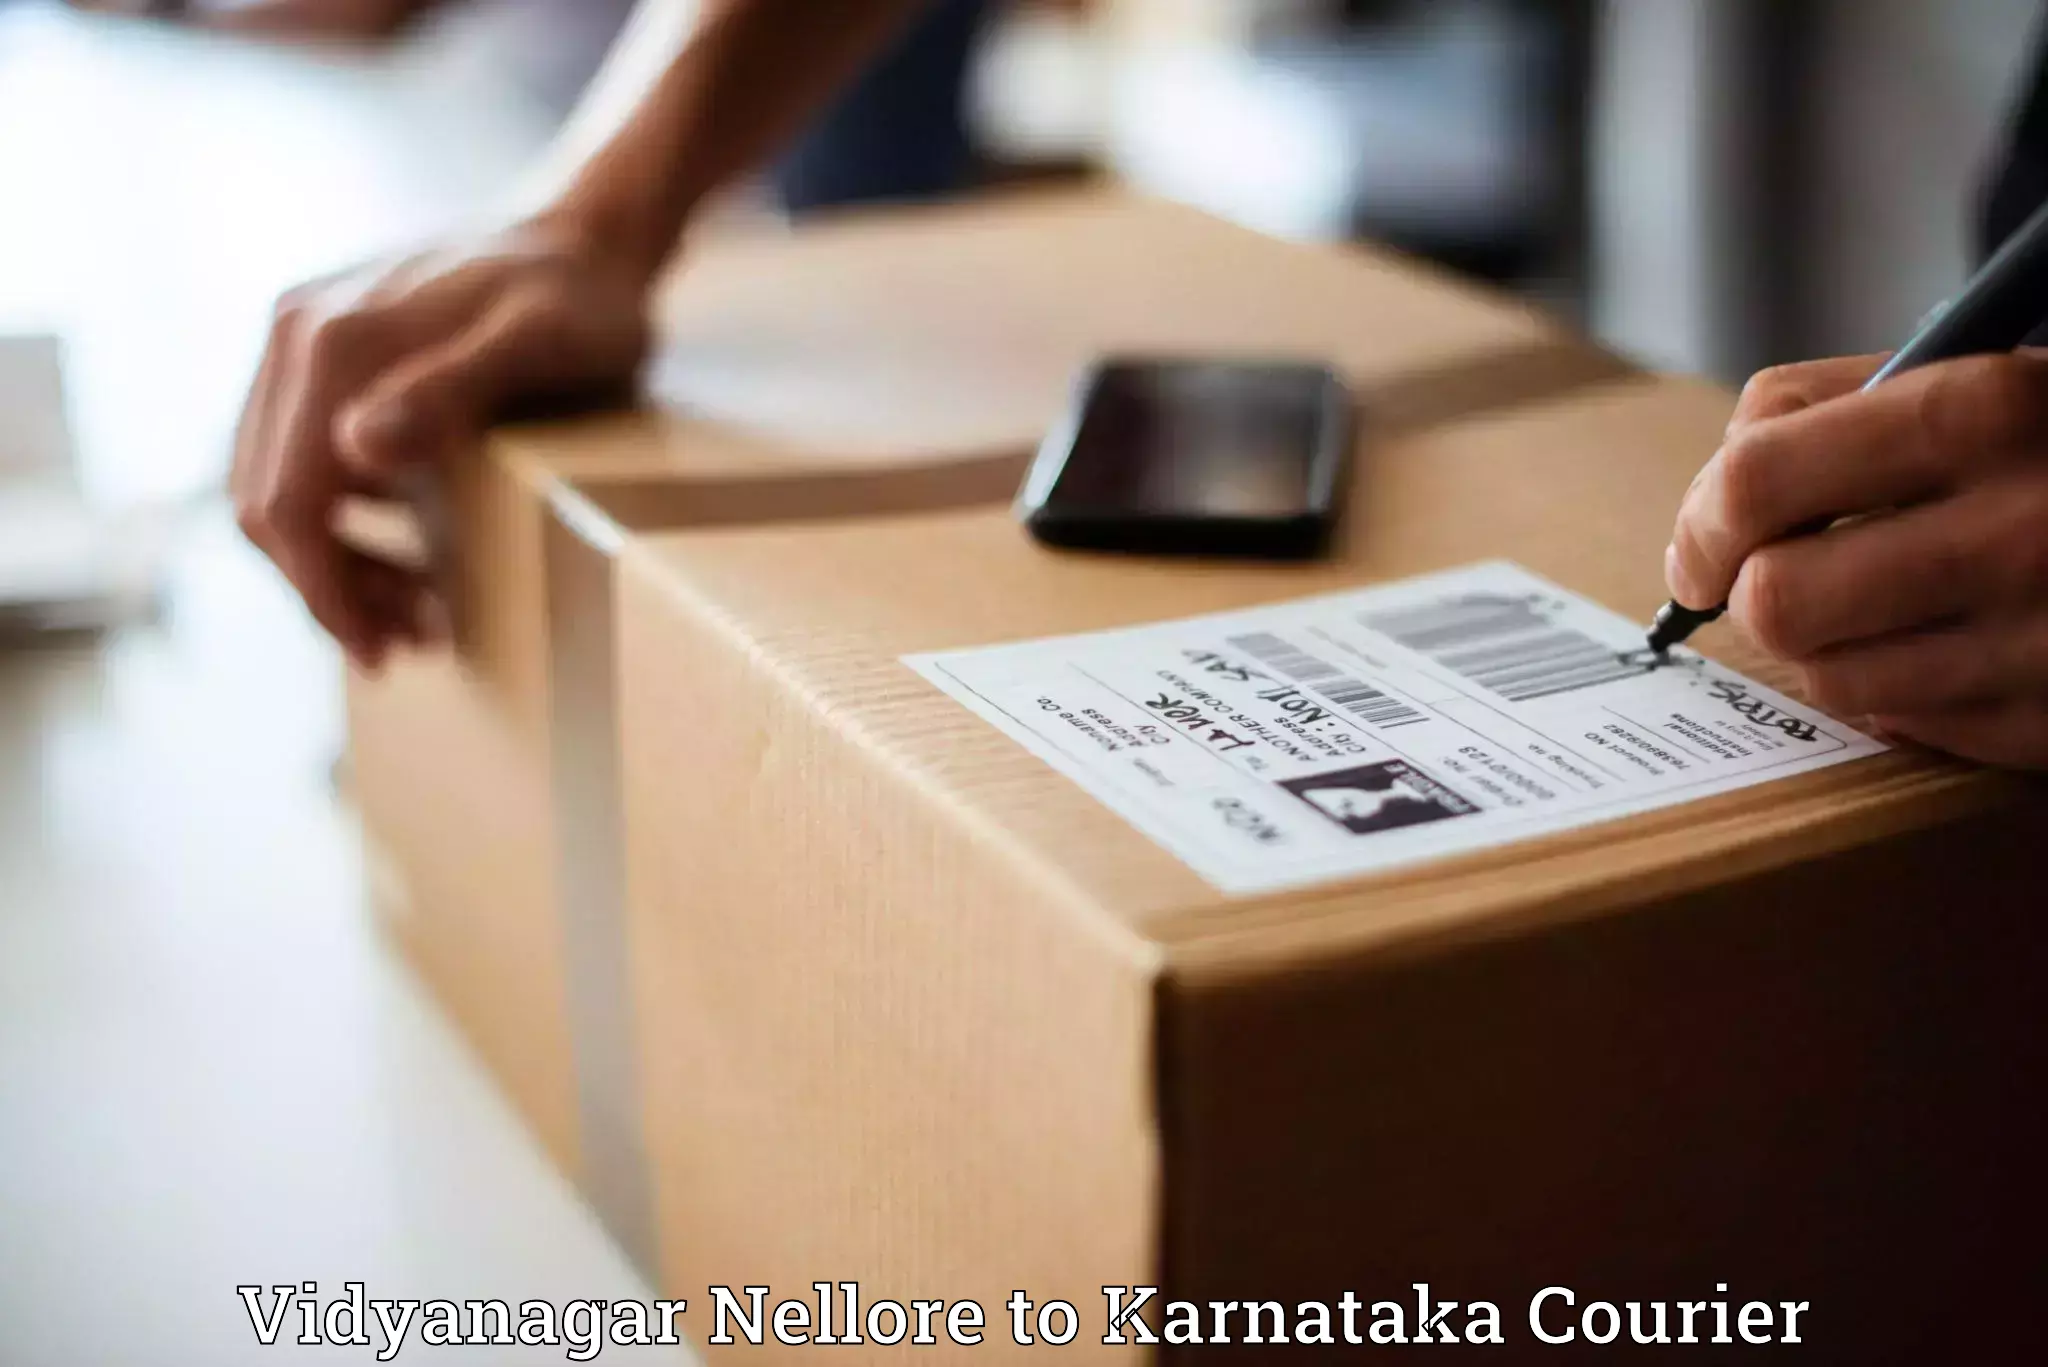 Domestic courier Vidyanagar Nellore to Tarikere